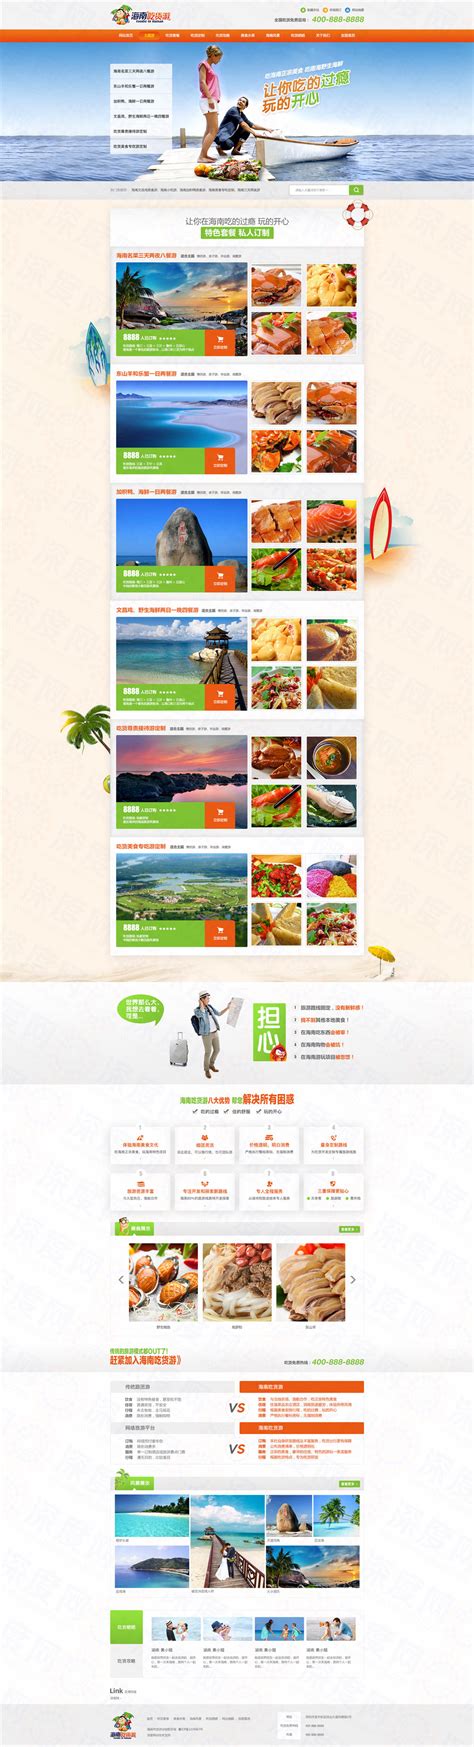 海南吃乐游商旅服务营销型网站建设案例|旅游/休闲/户外|深度网